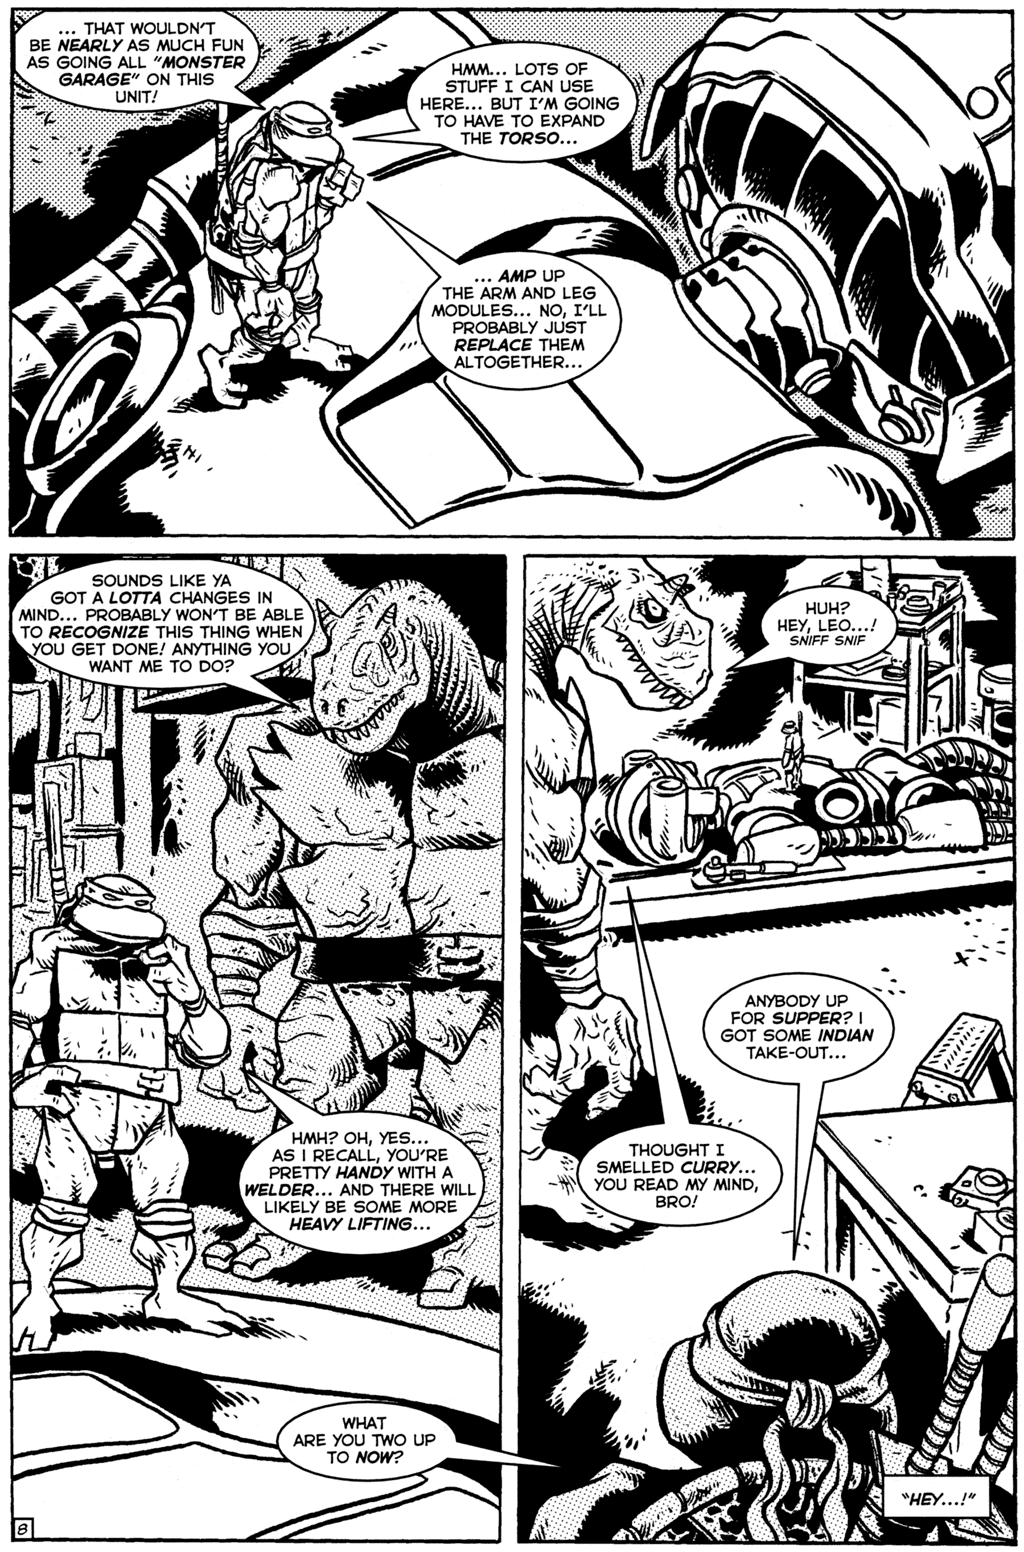 TMNT: Teenage Mutant Ninja Turtles issue 23 - Page 9